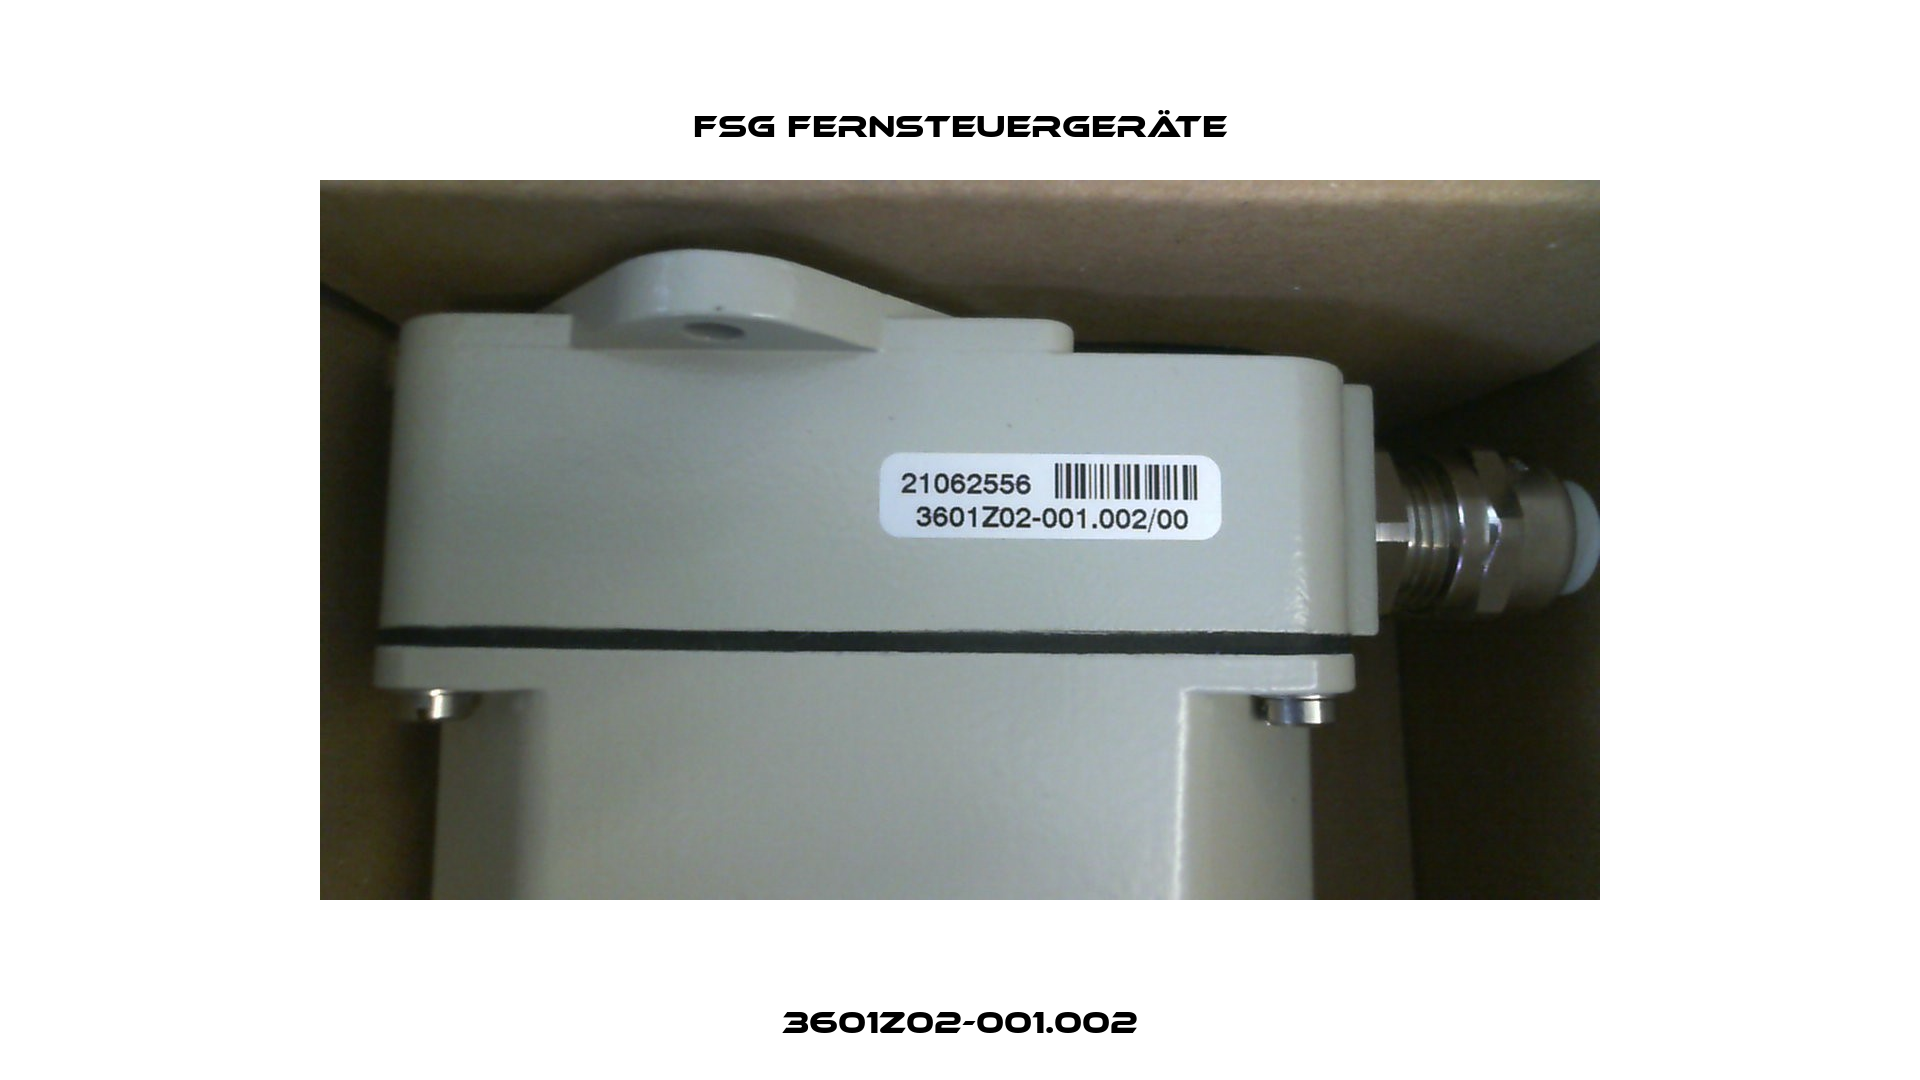 3601Z02-001.002 FSG Fernsteuergeräte